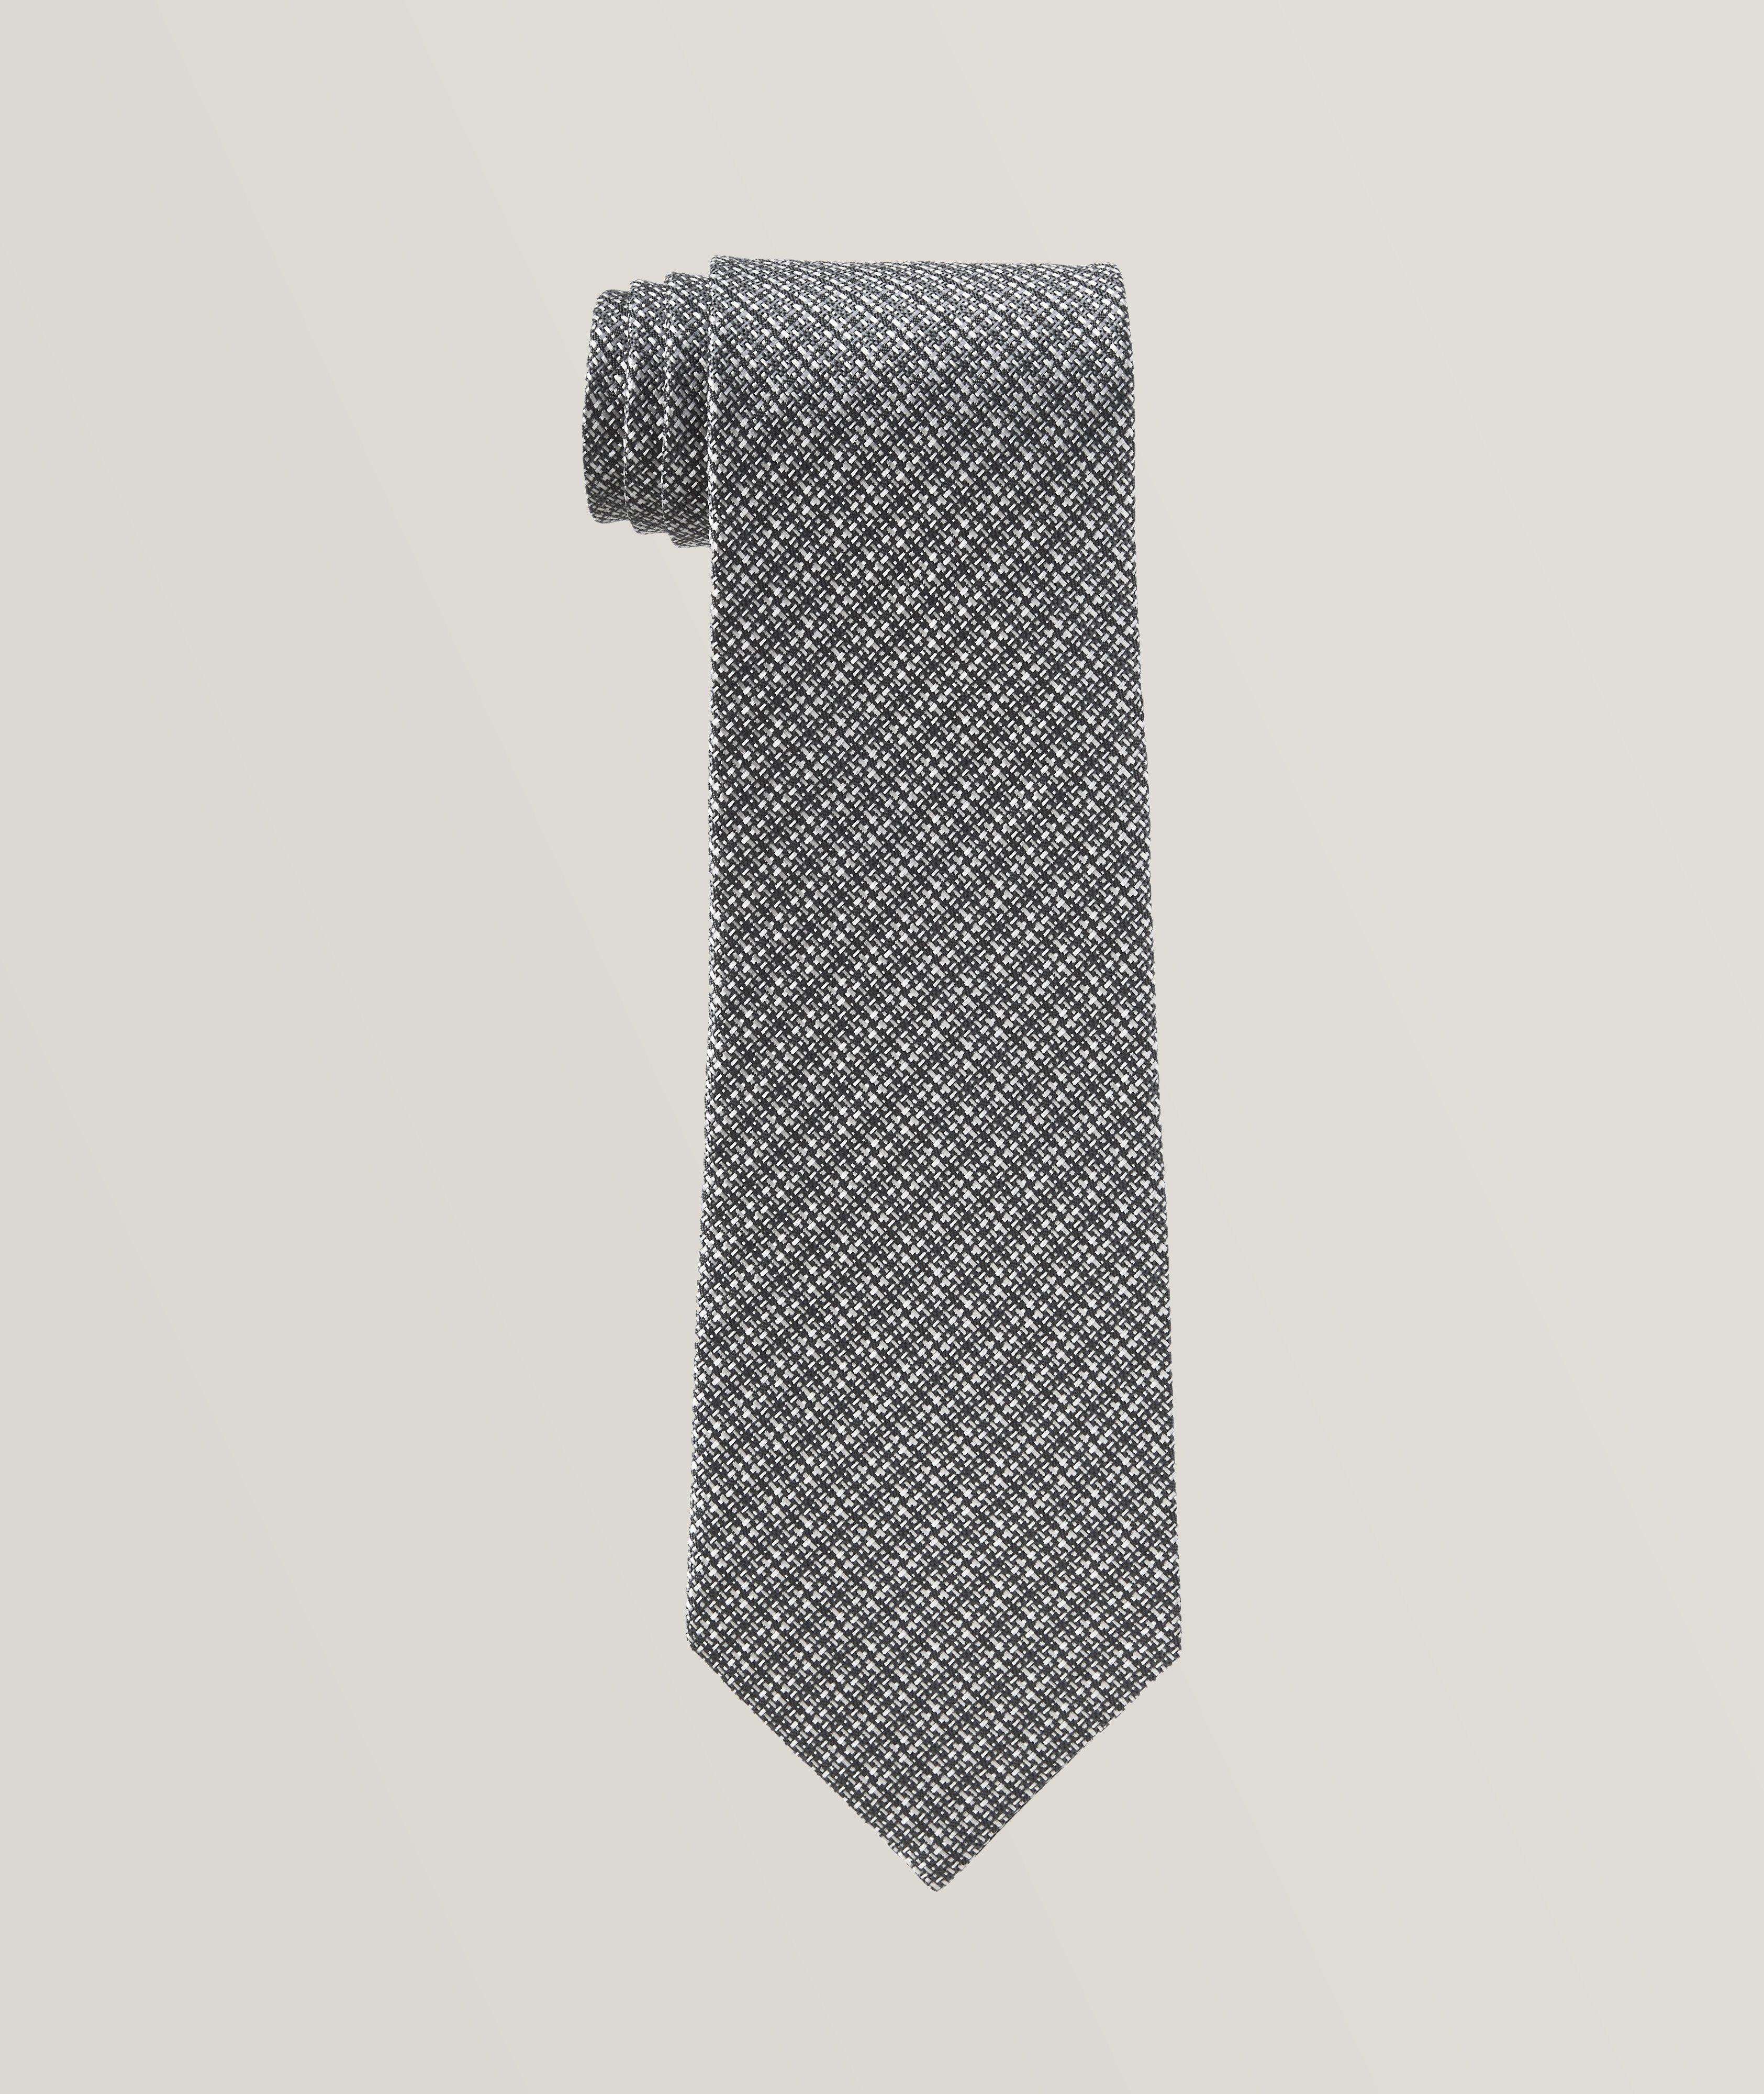 Cravate en soie à motif répété image 0